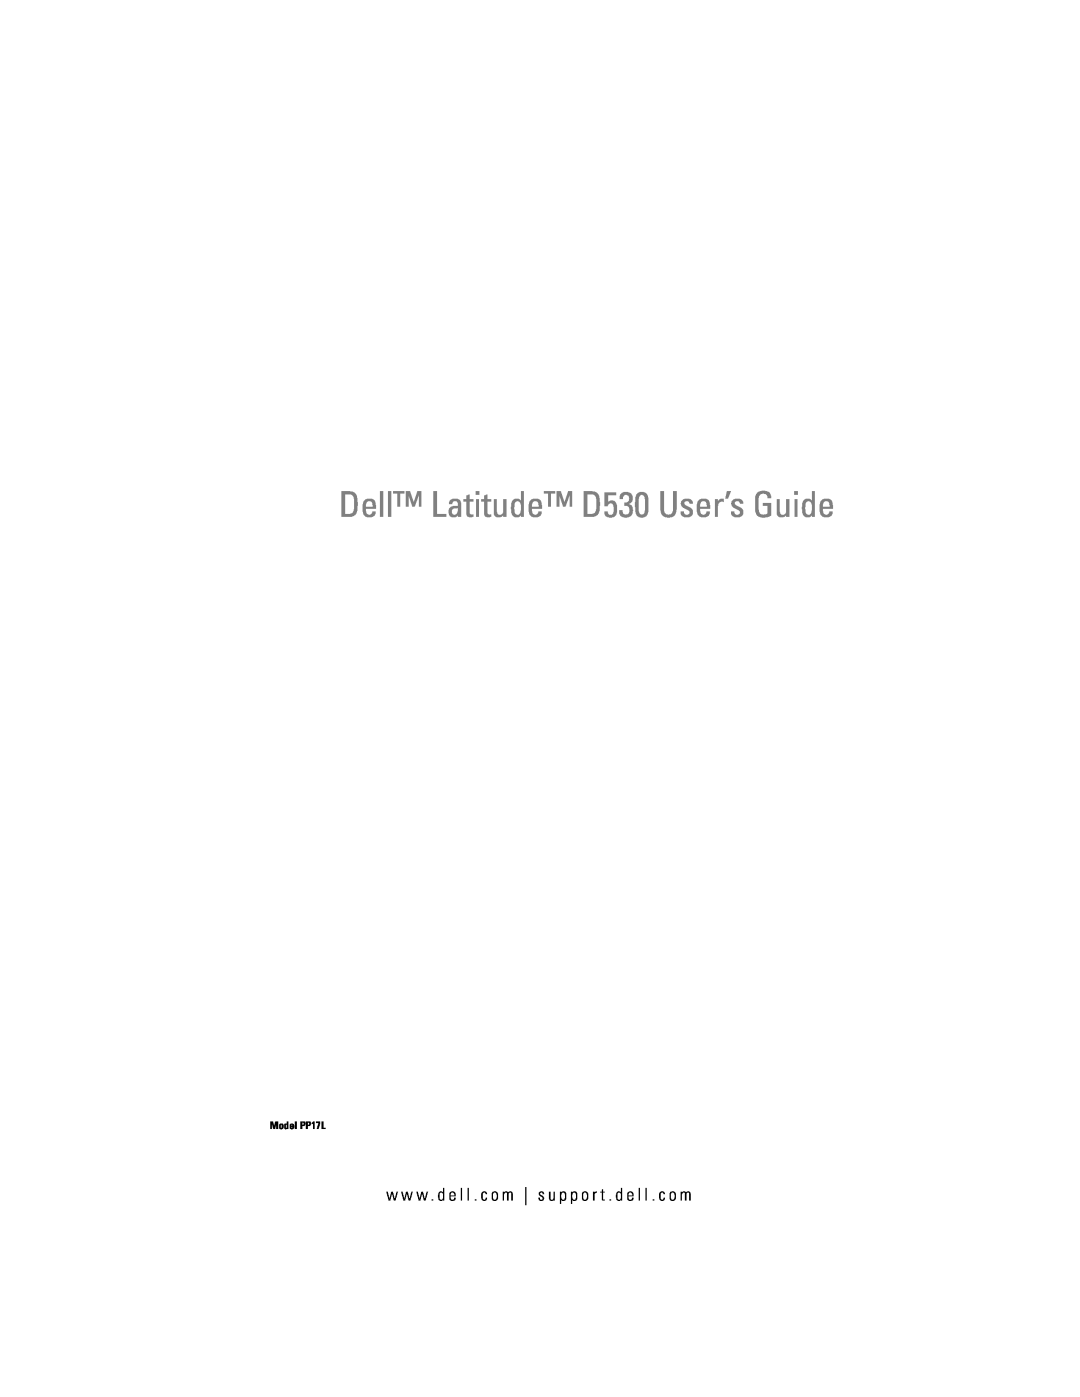 Dell manual Dell Latitude D530 User’s Guide, w w w . d e l l . c o m s u p p o r t . d e l l . c o m, Model PP17L 